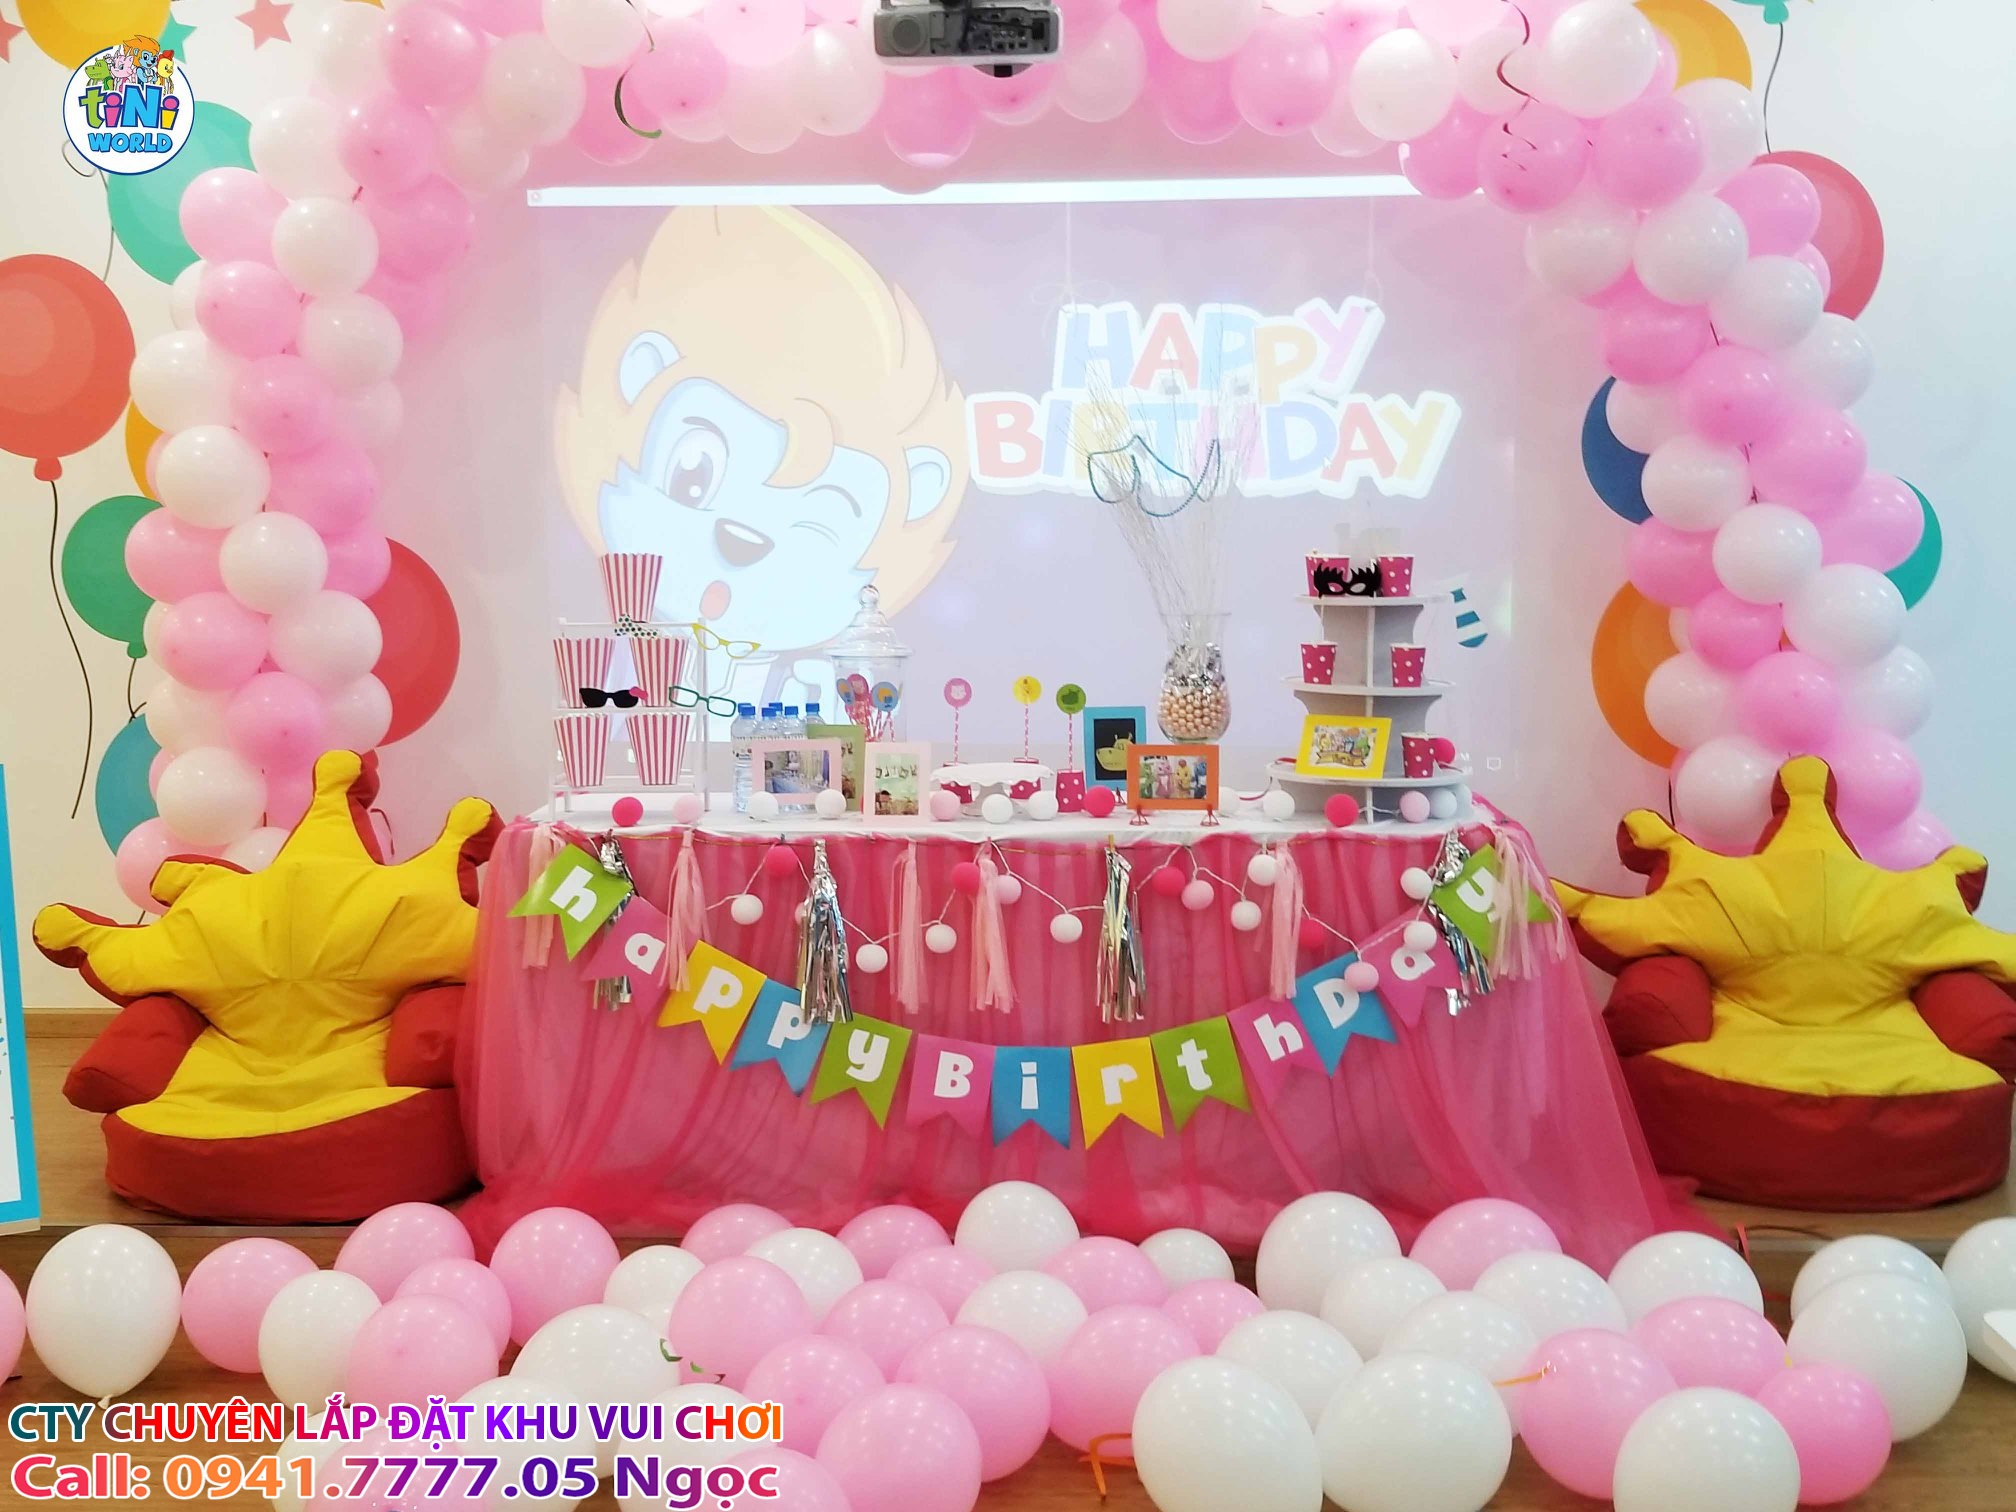 Dịch vụ tổ chức tiệc sinh nhật cho bé trọn gói tại TPHCM  tiNiWorld